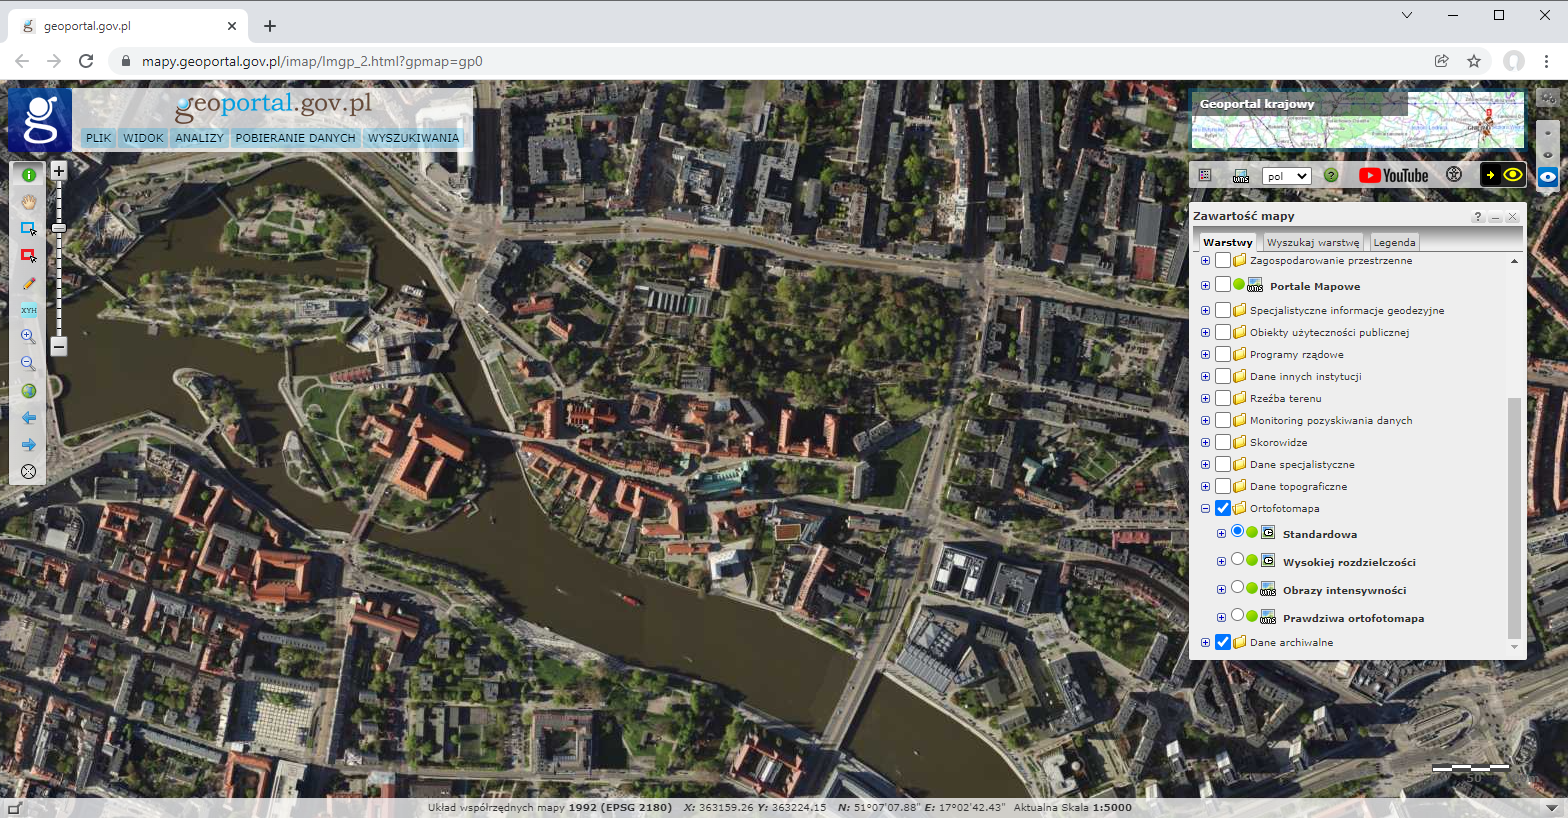 Rysunek przedstawia zrzut ekranu z serwisu www.geoportal.gov.pl prezentujący ortofotomapę dla miasta Wrocławia.